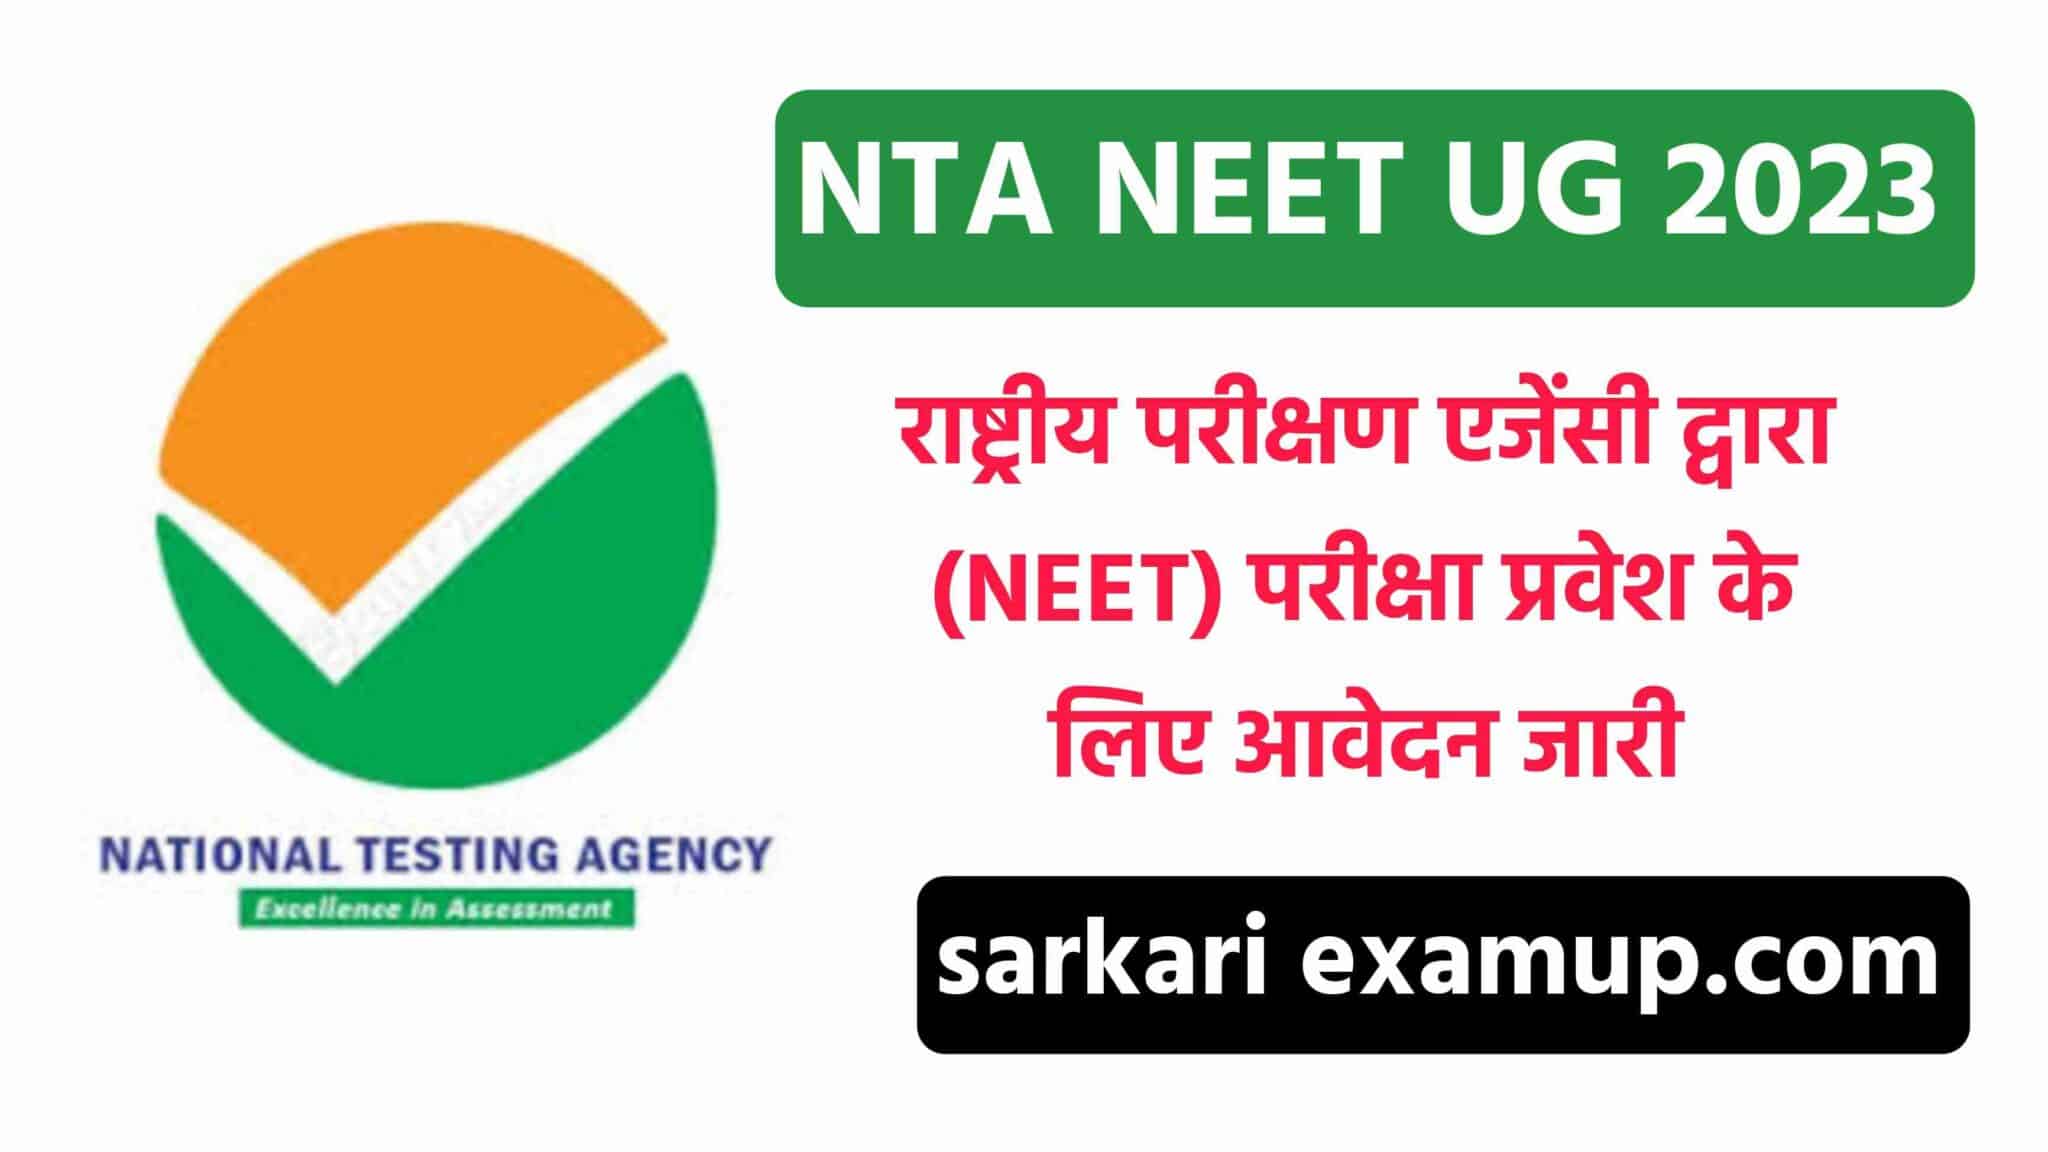 NTA NEET UG Online Form 2023 राष्ट्रीय परीक्षण एजेंसी (नीट) एडमिशन